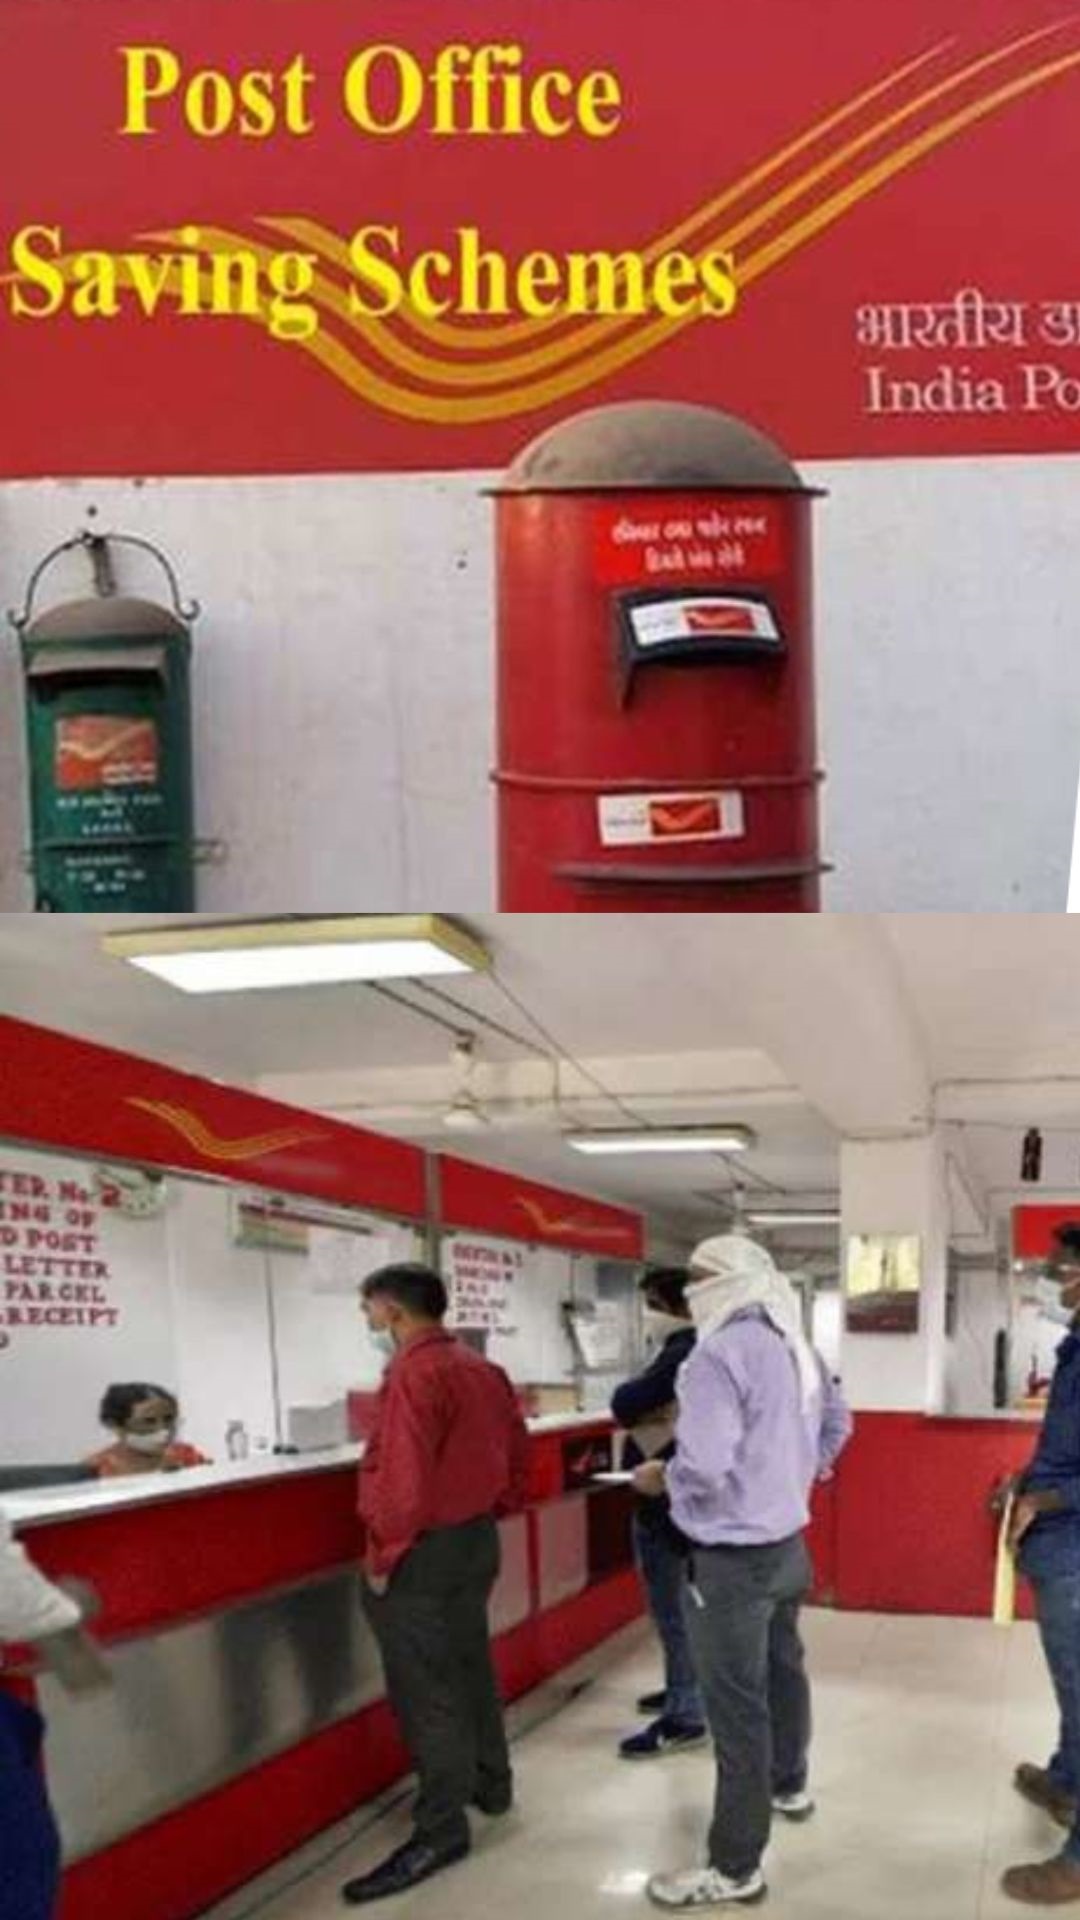 Post Office की इस महिला स्पेशल स्कीम में ₹2 लाख जमा करने पर मेच्योरिटी अमाउंट कितना बनेगा? 